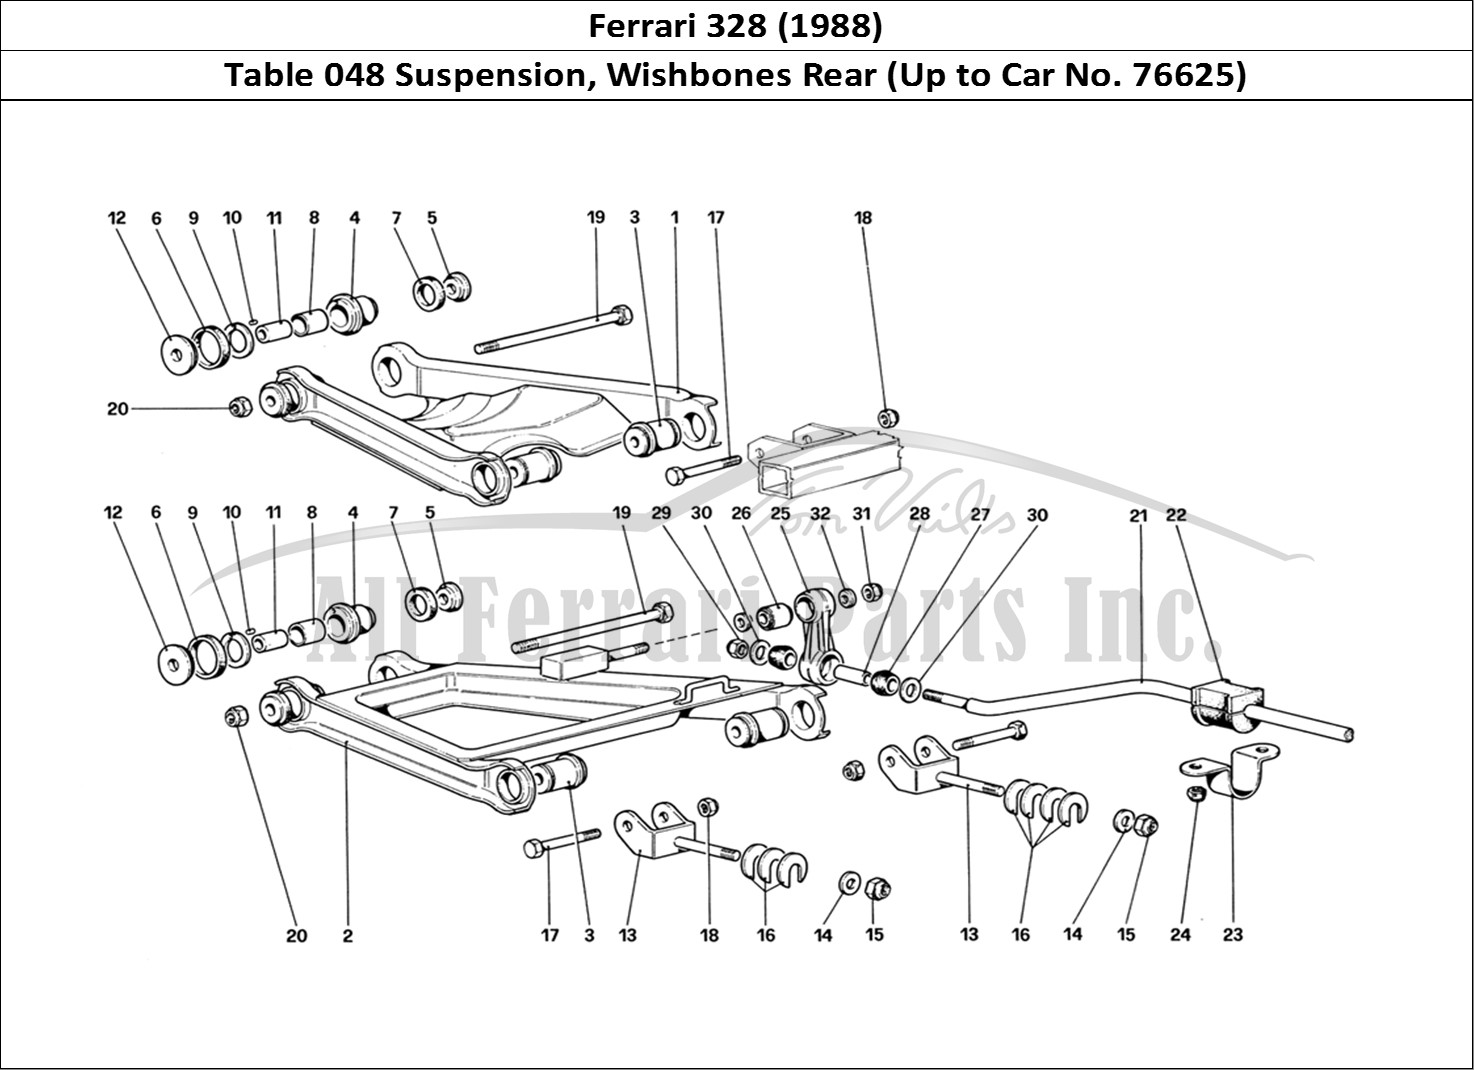 Ferrari Parts Ferrari 328 (1988) Page 048 Rear Suspension - Wishbon